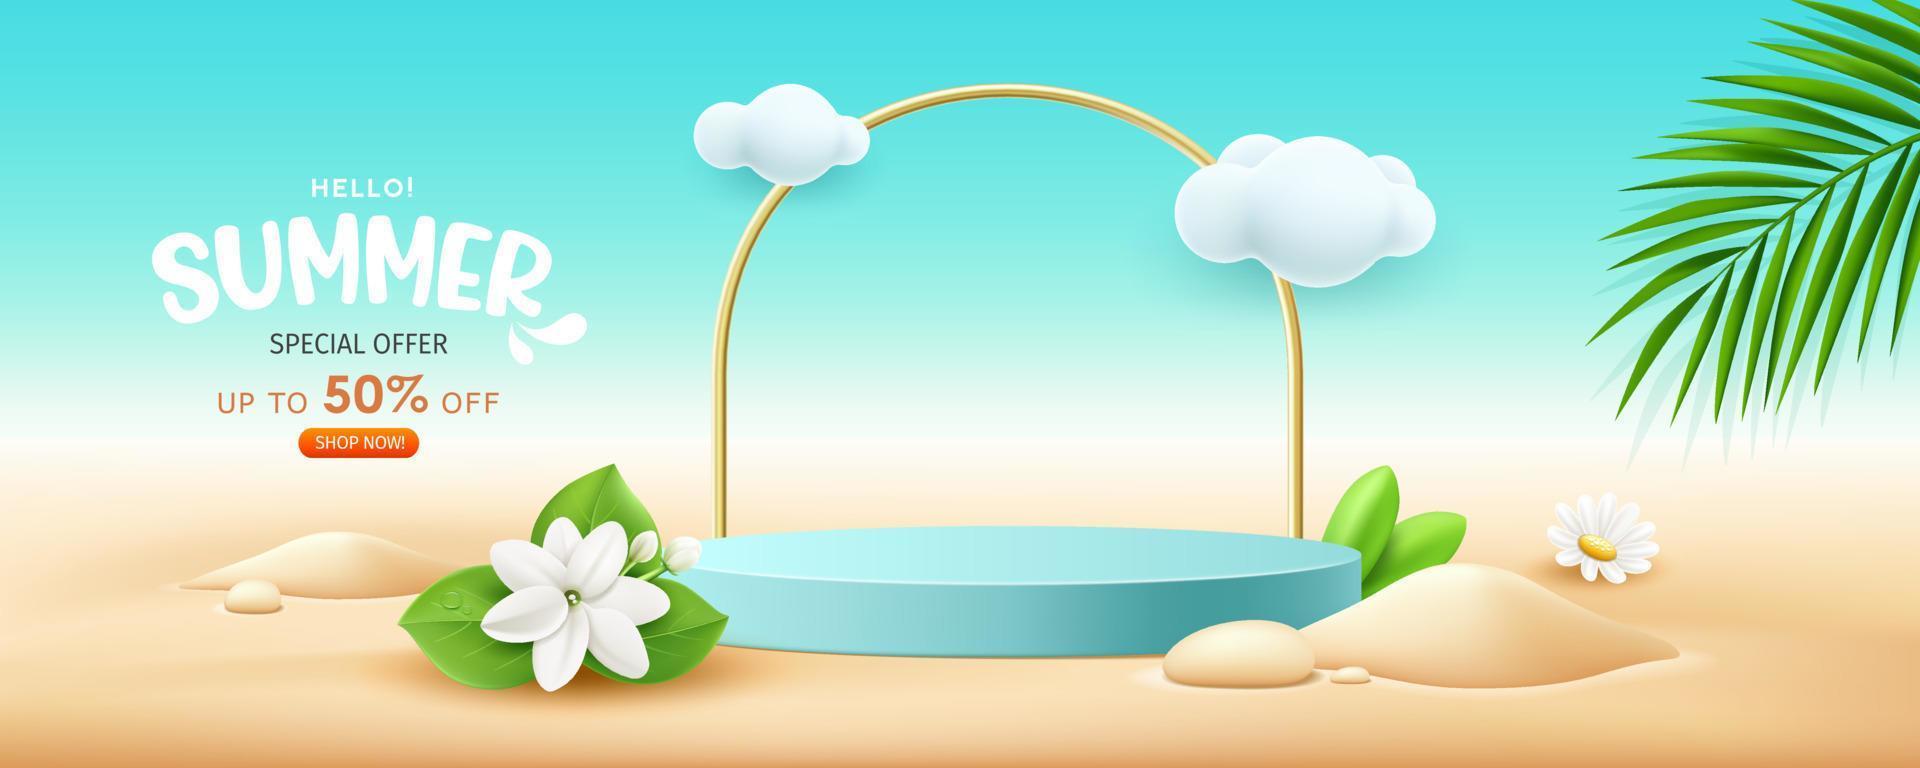 sommar visa podium blå Färg försäljning, blommor och kokos löv lugg av sand baner design, på moln och sand strand bakgrund, eps 10 vektor illustration